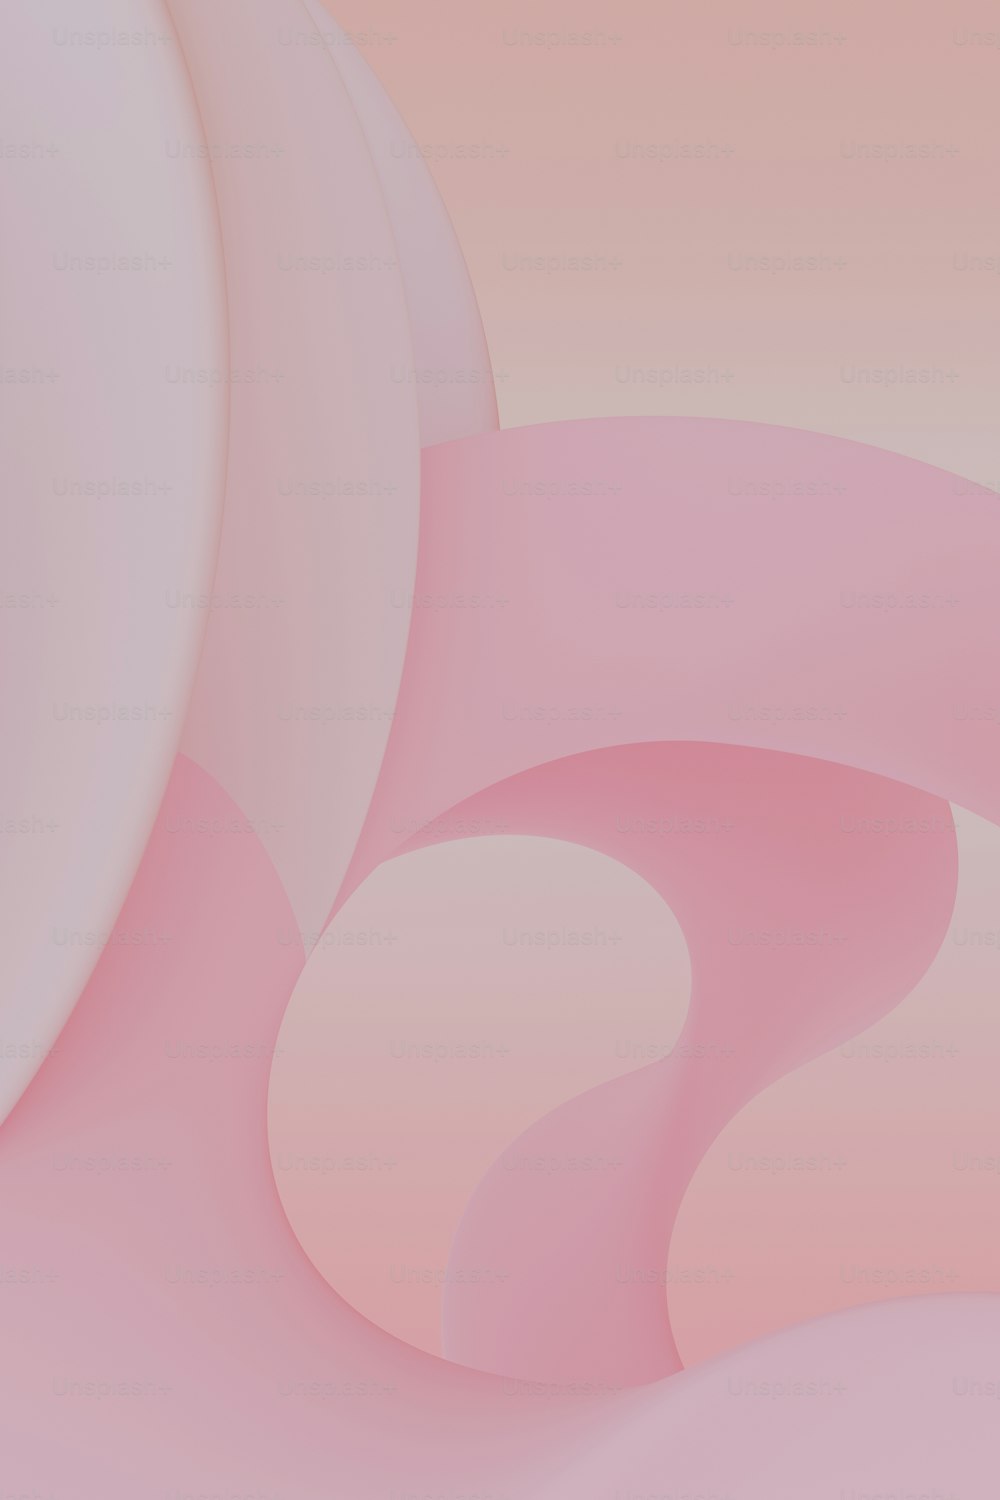 Un fond abstrait rose et blanc aux formes courbes